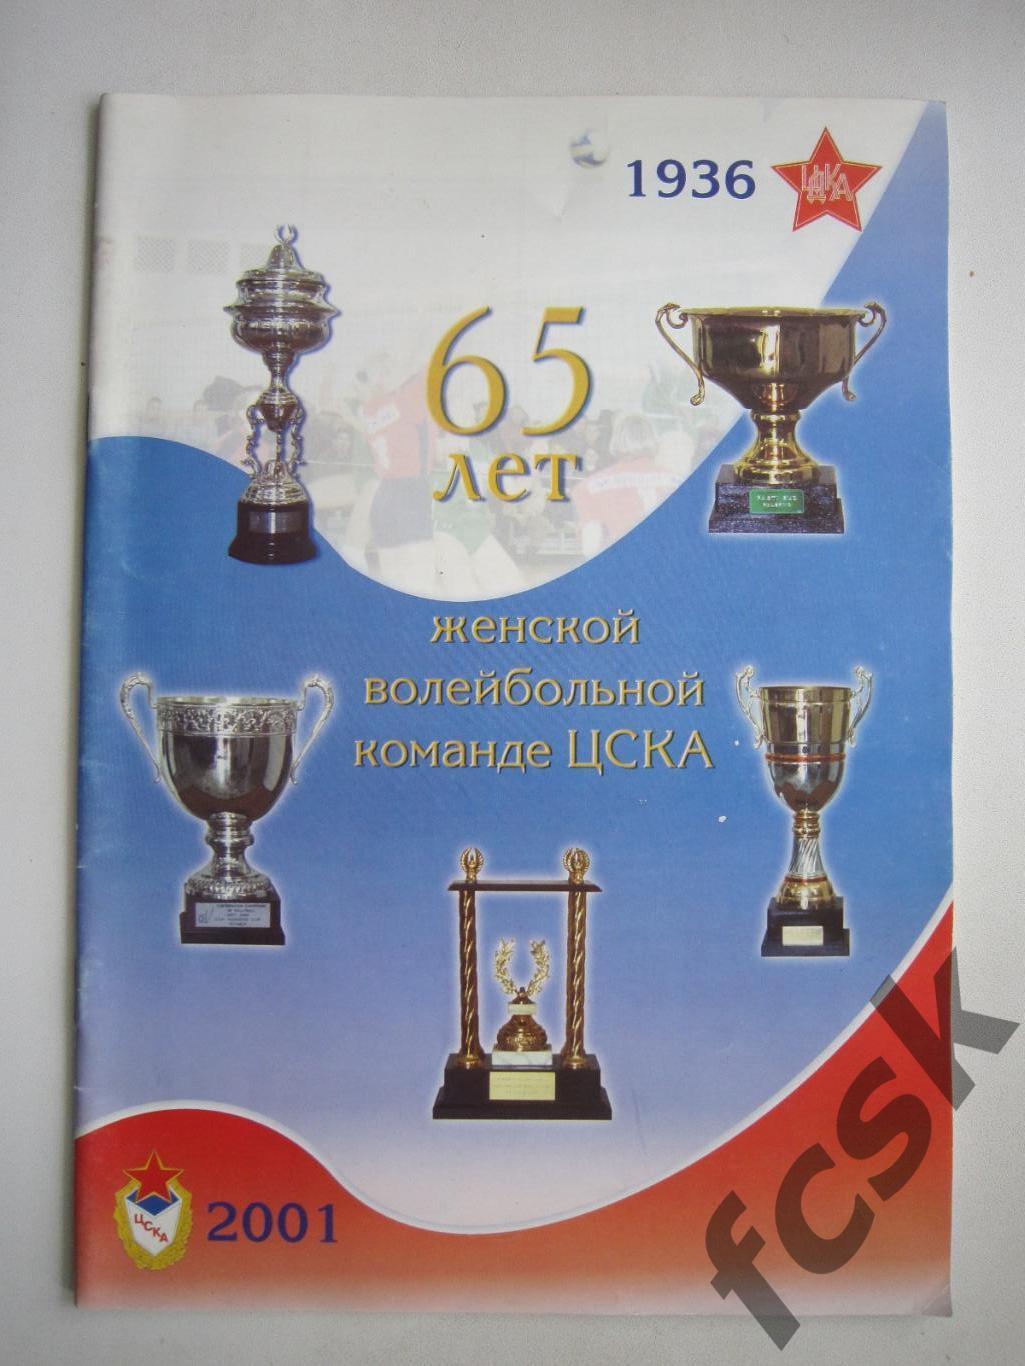 65 лет женской волейбольной команде ЦСКА 1936 - 2001